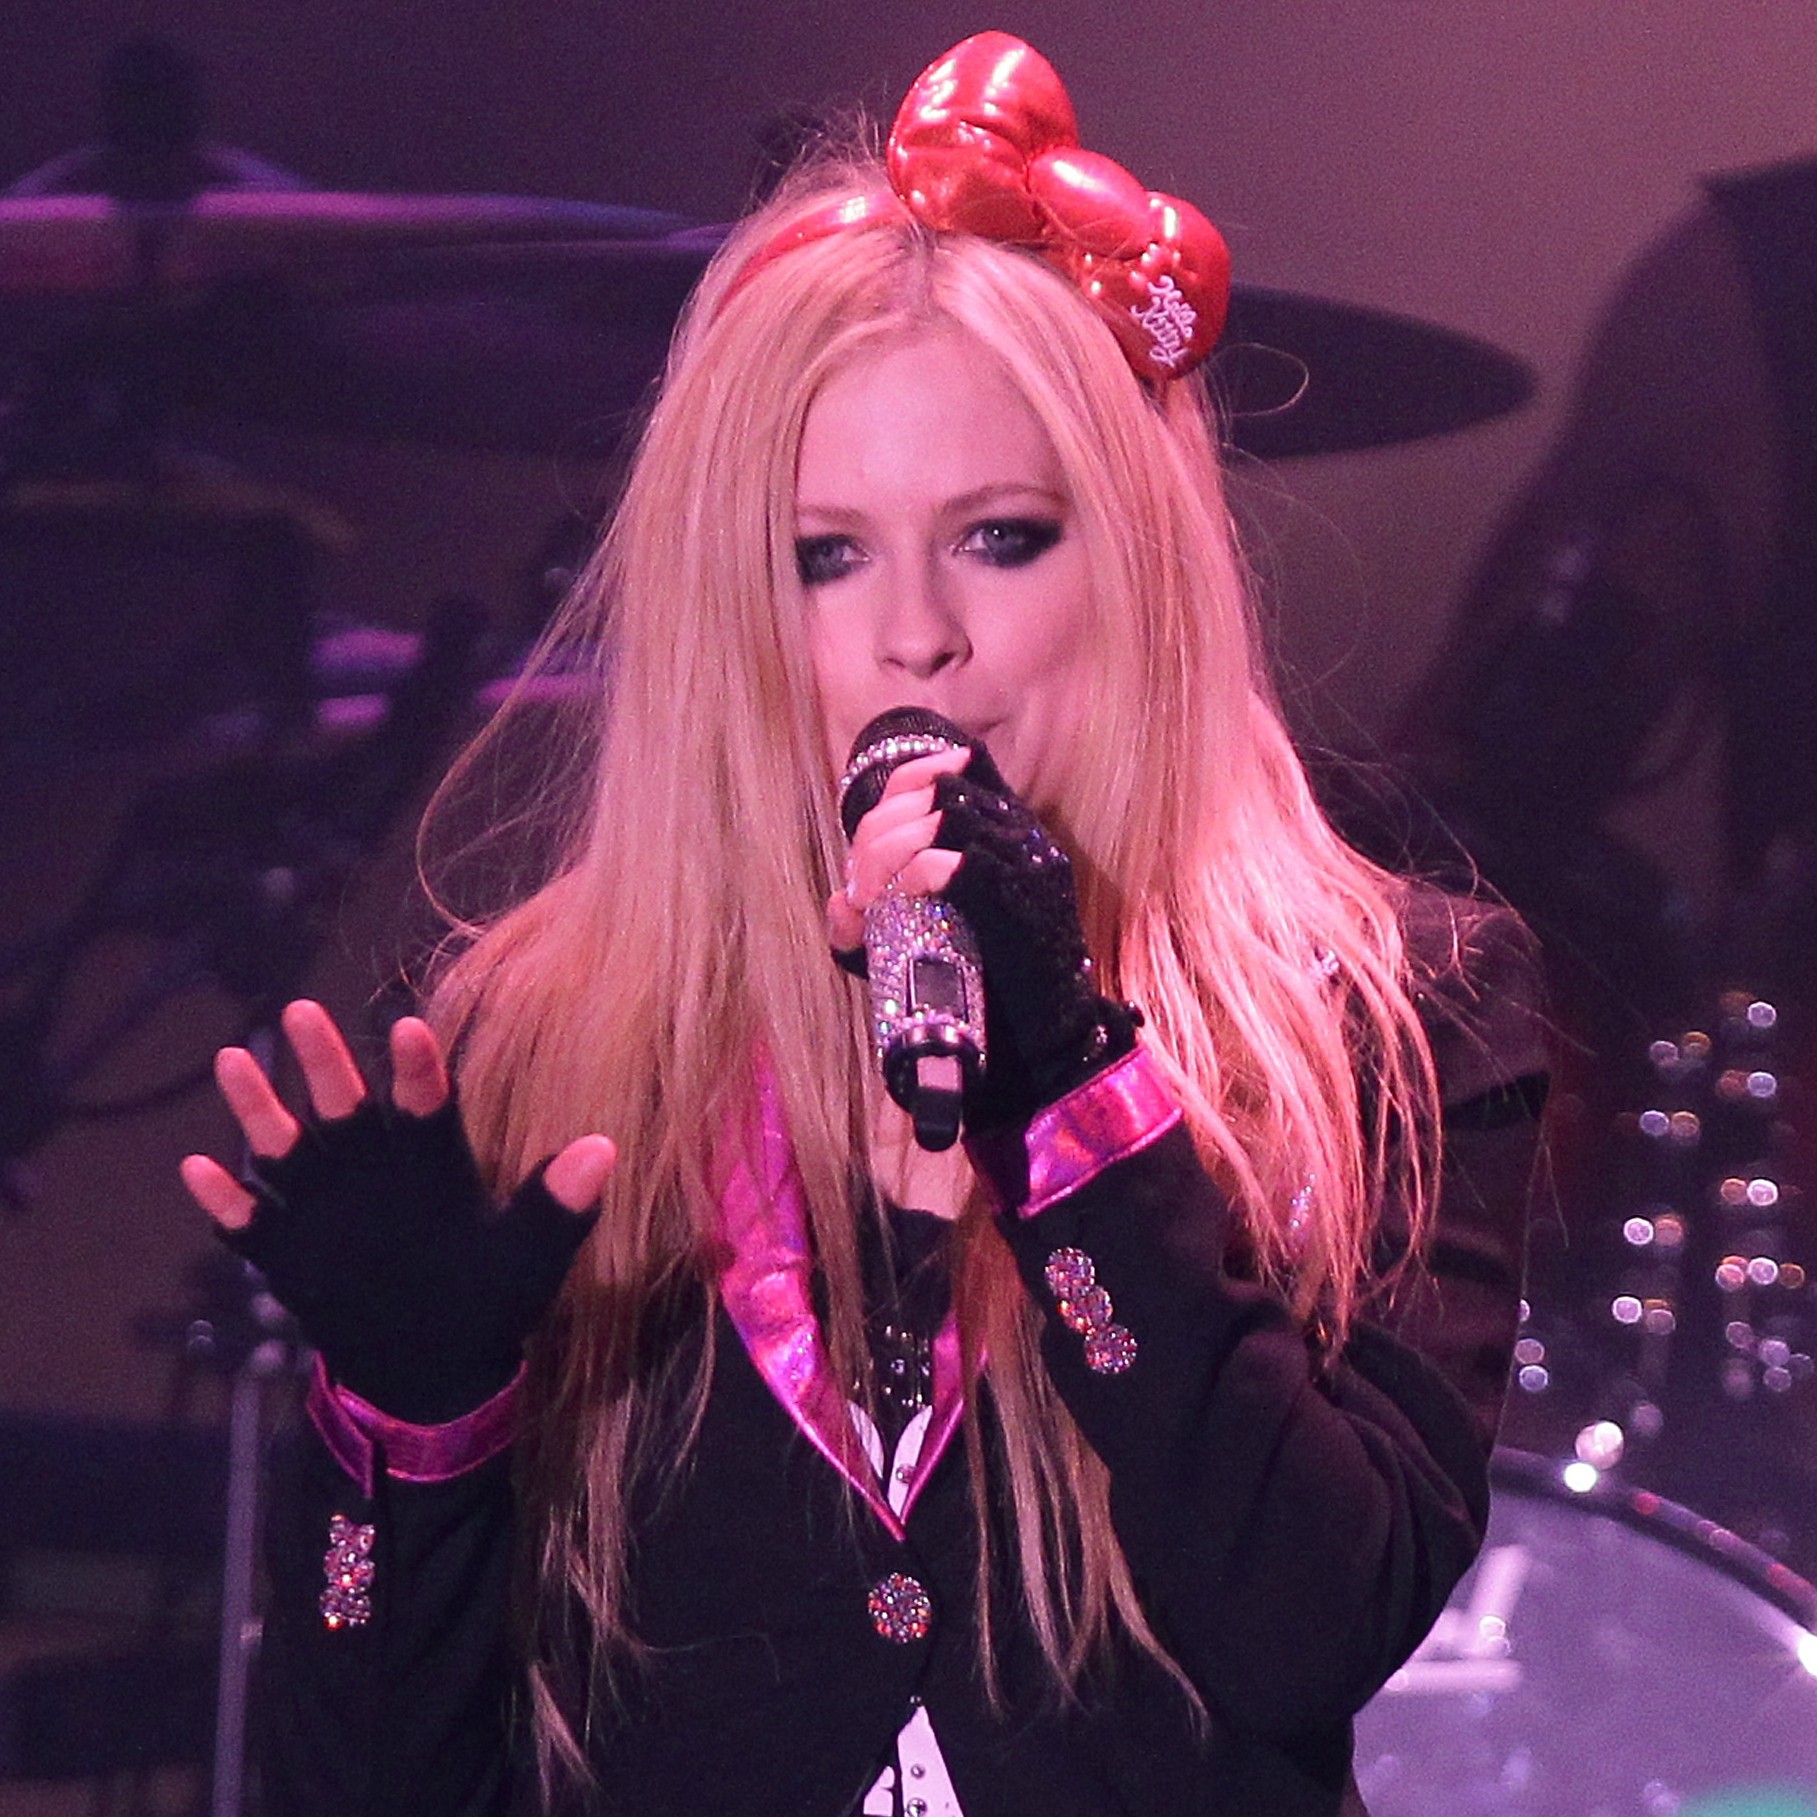 Está na cara o vício de Avril Lavigne. A roqueira canadense não sabe viver sem maquiagem e admite ter obsessão por qualquer coisa capaz de realçar seus olhos. (Foto: Getty Images)